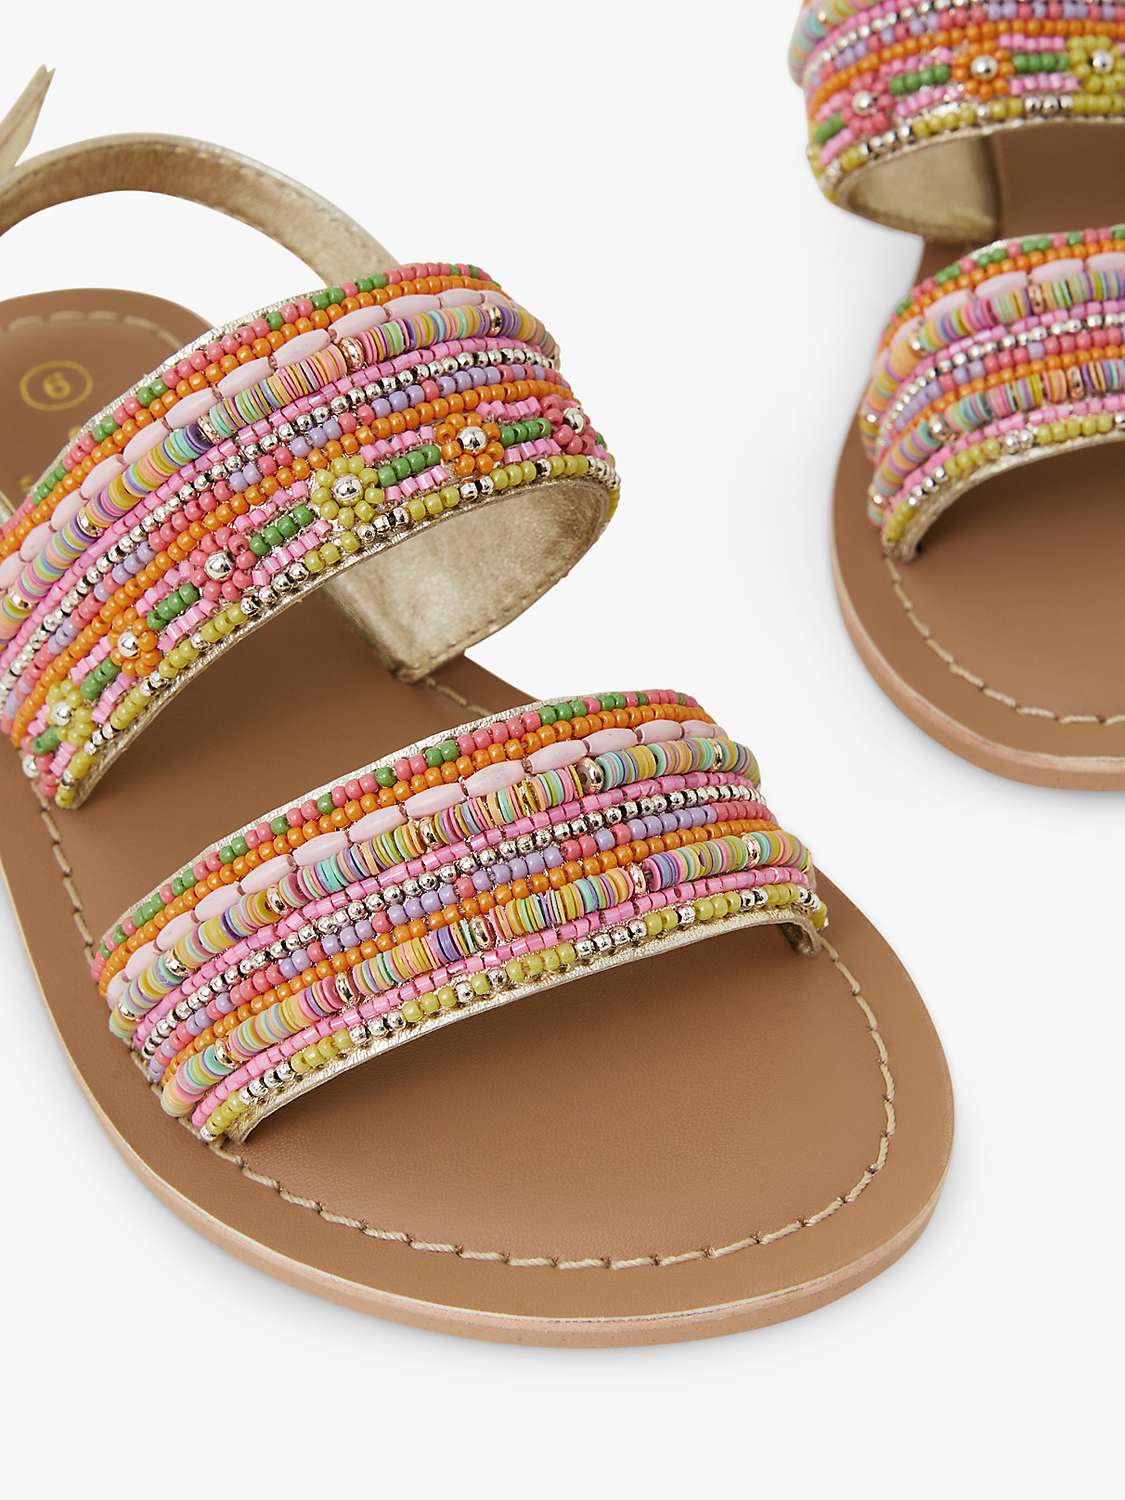 Buy Accessorize Kids' Embellished Sandals, Brown/Multi Online at johnlewis.com